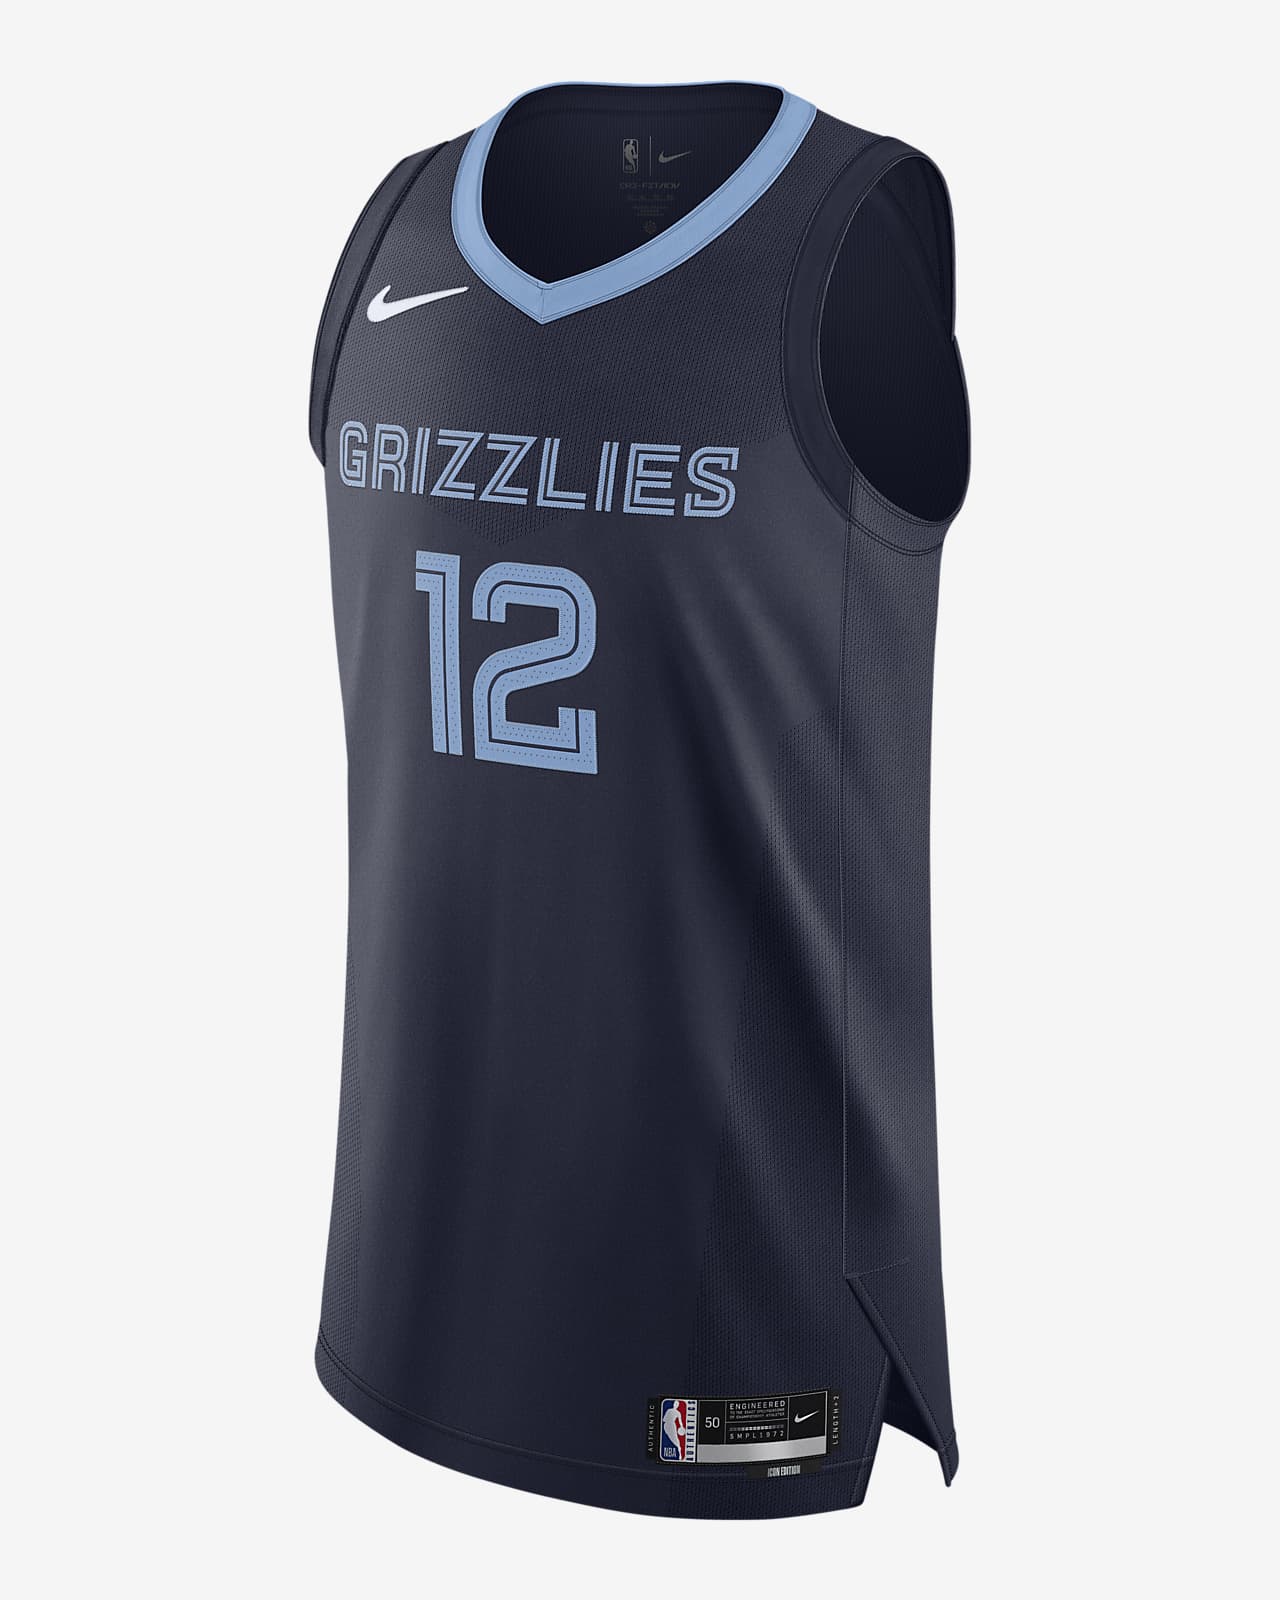 2020 赛季孟菲斯灰熊队 Icon Edition Nike NBA Authentic Jersey 男子速干球衣